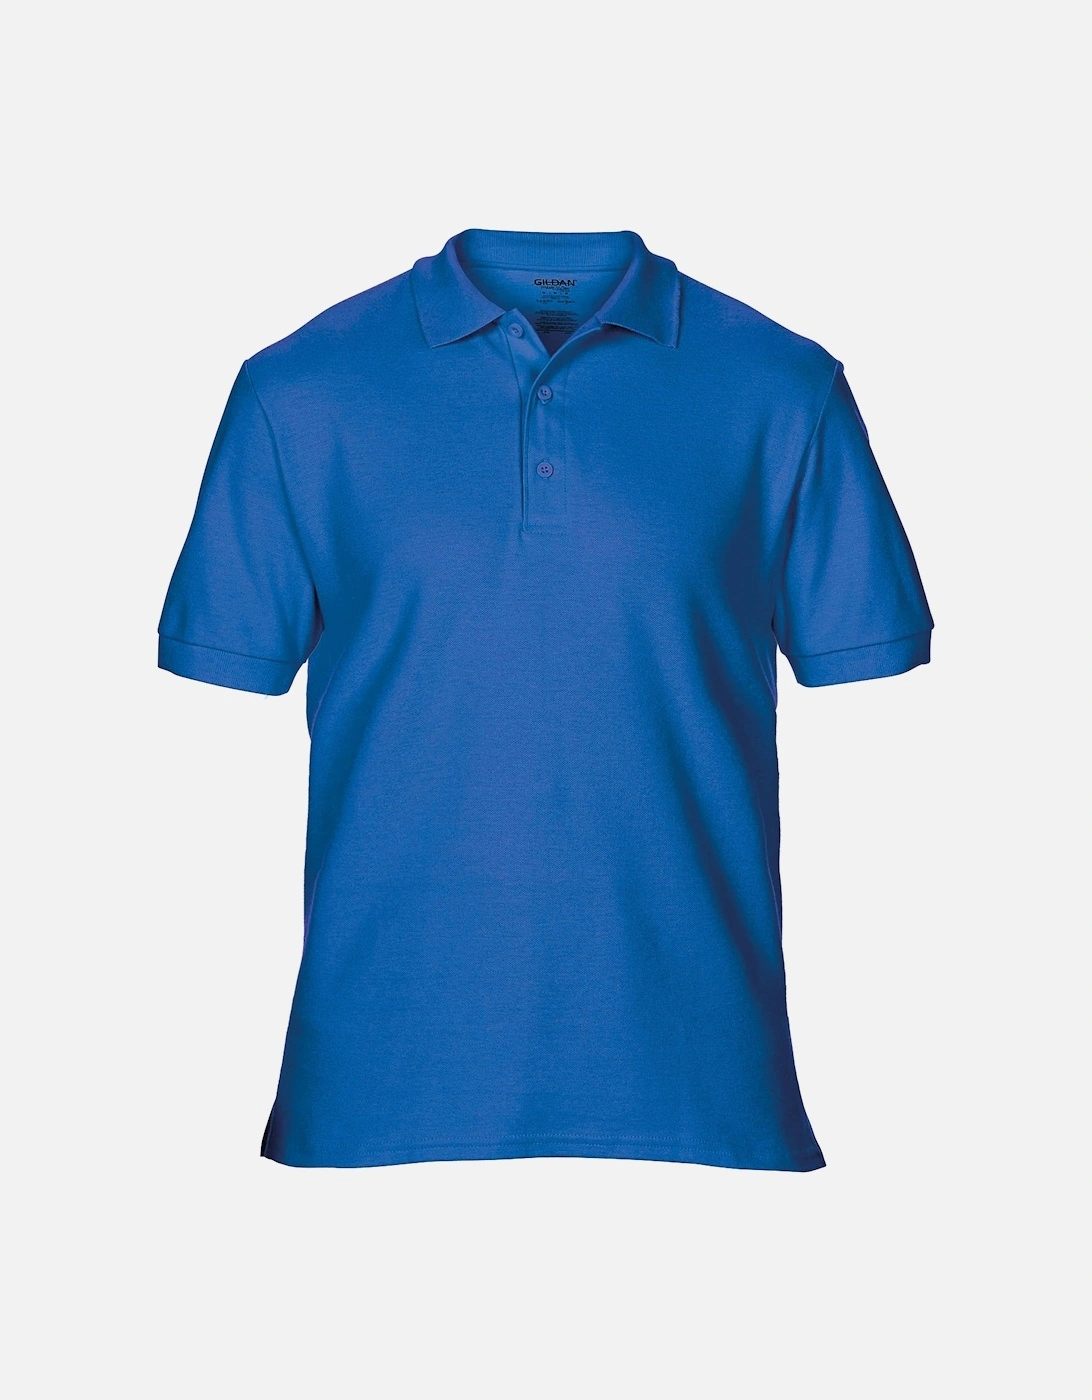 Mens Premium Cotton Sport Double Pique Polo Shirt, 3 of 2